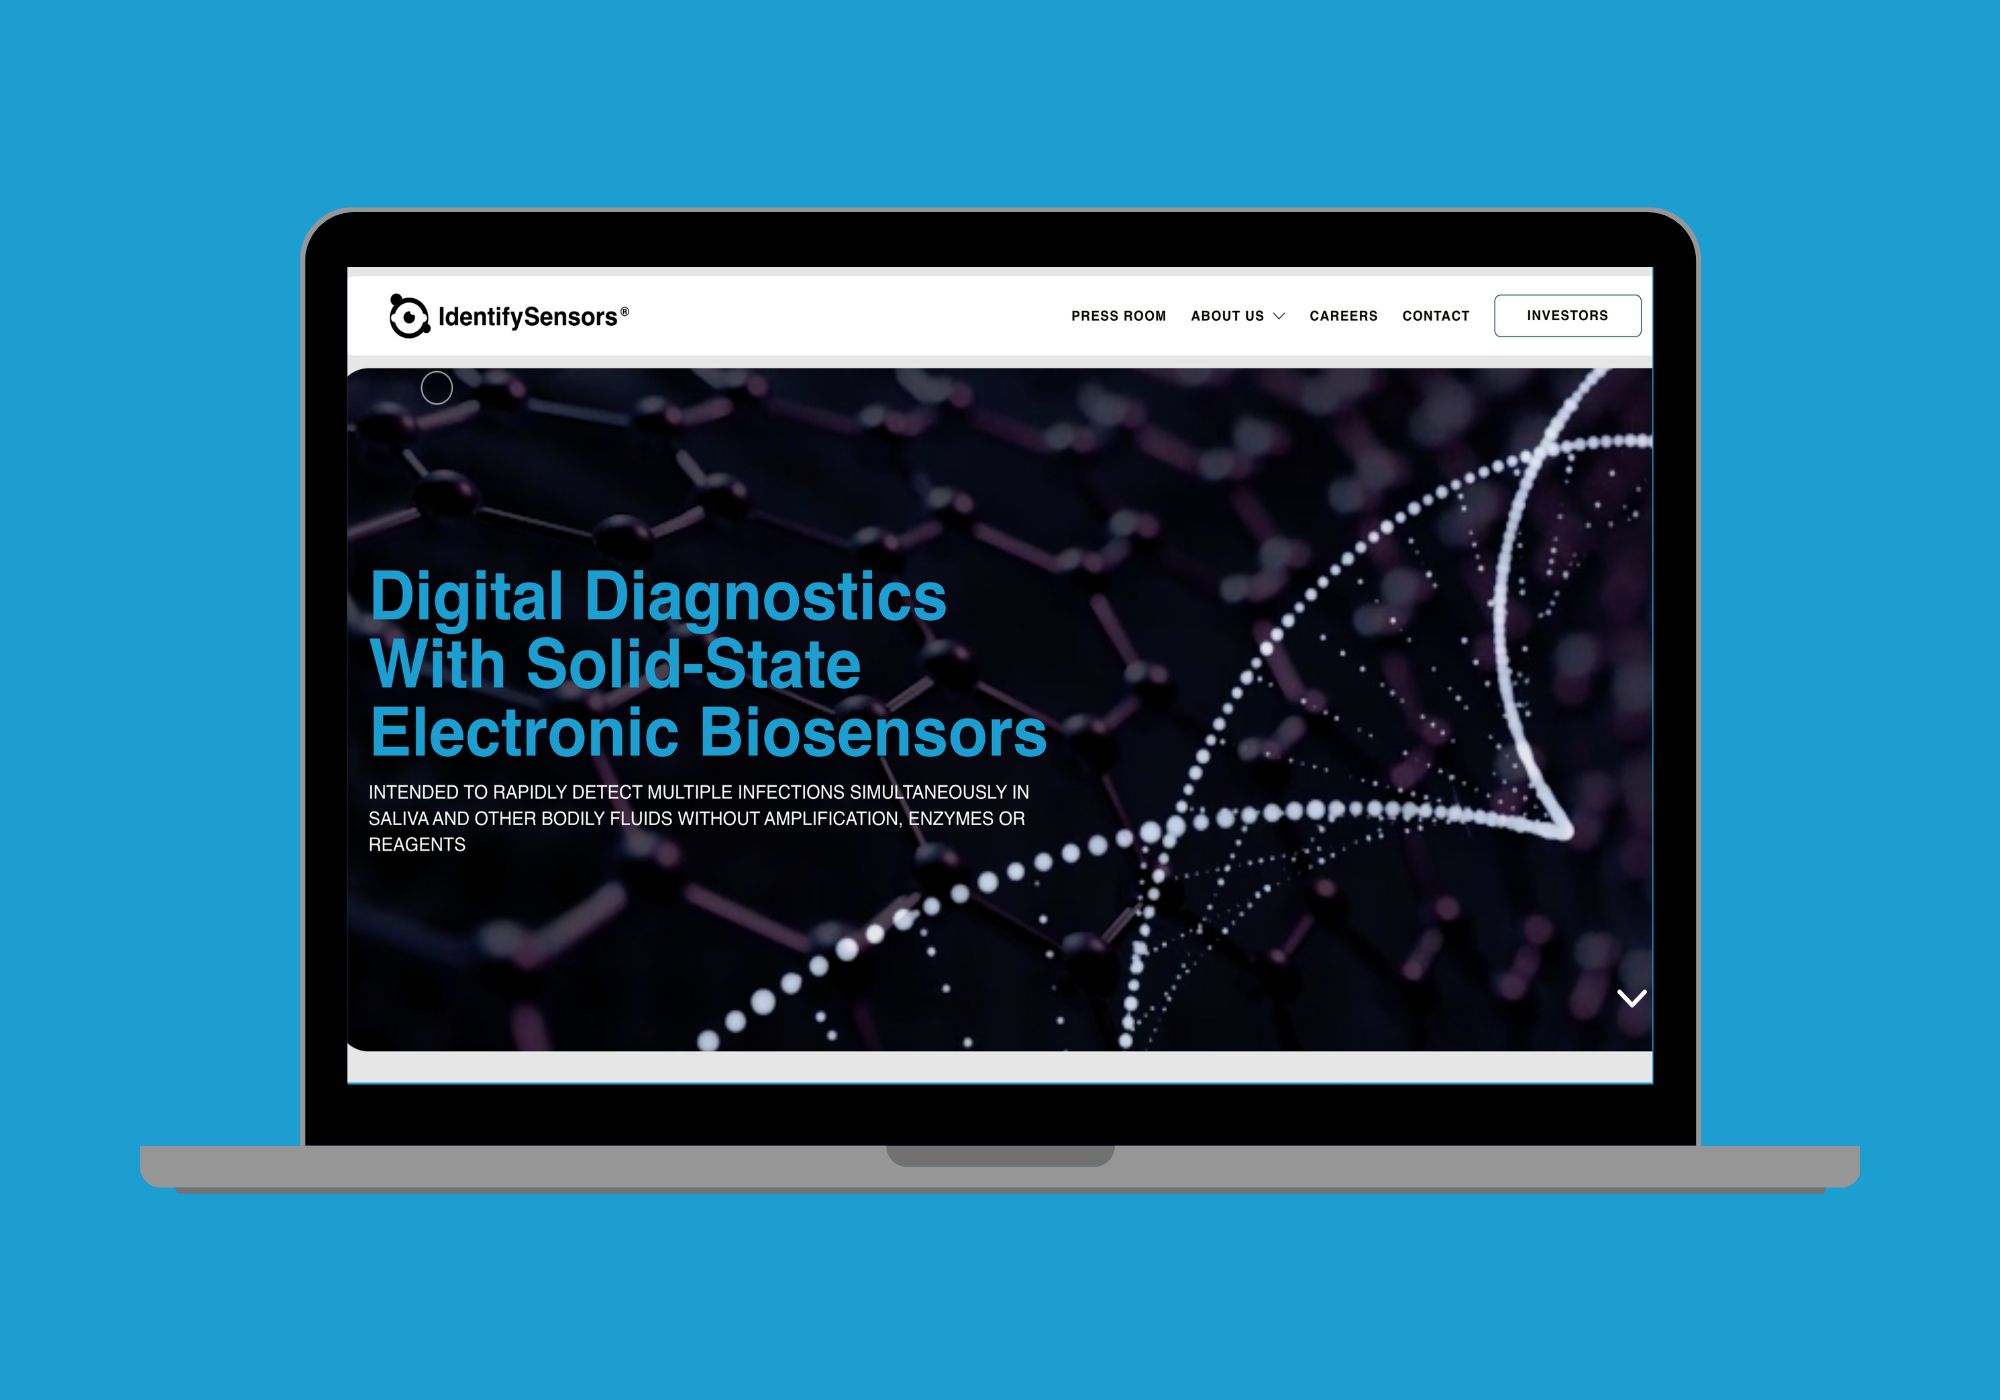 Website designed for IdentifySensors Biologics